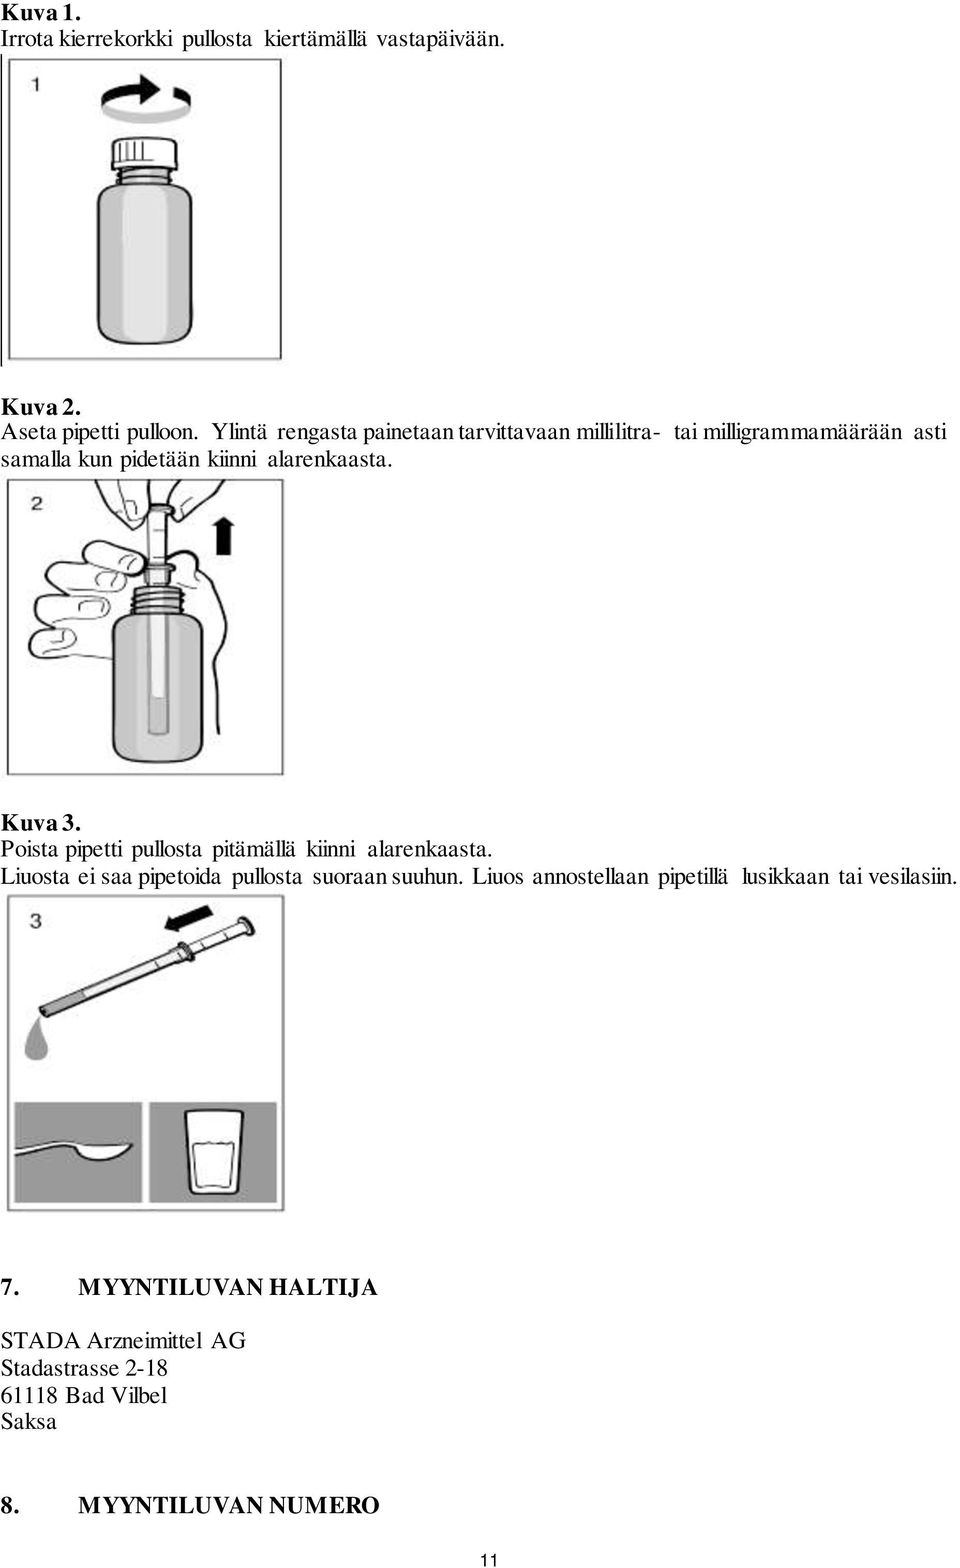 Kuva 3. Poista pipetti pullosta pitämällä kiinni alarenkaasta. Liuosta ei saa pipetoida pullosta suoraan suuhun.